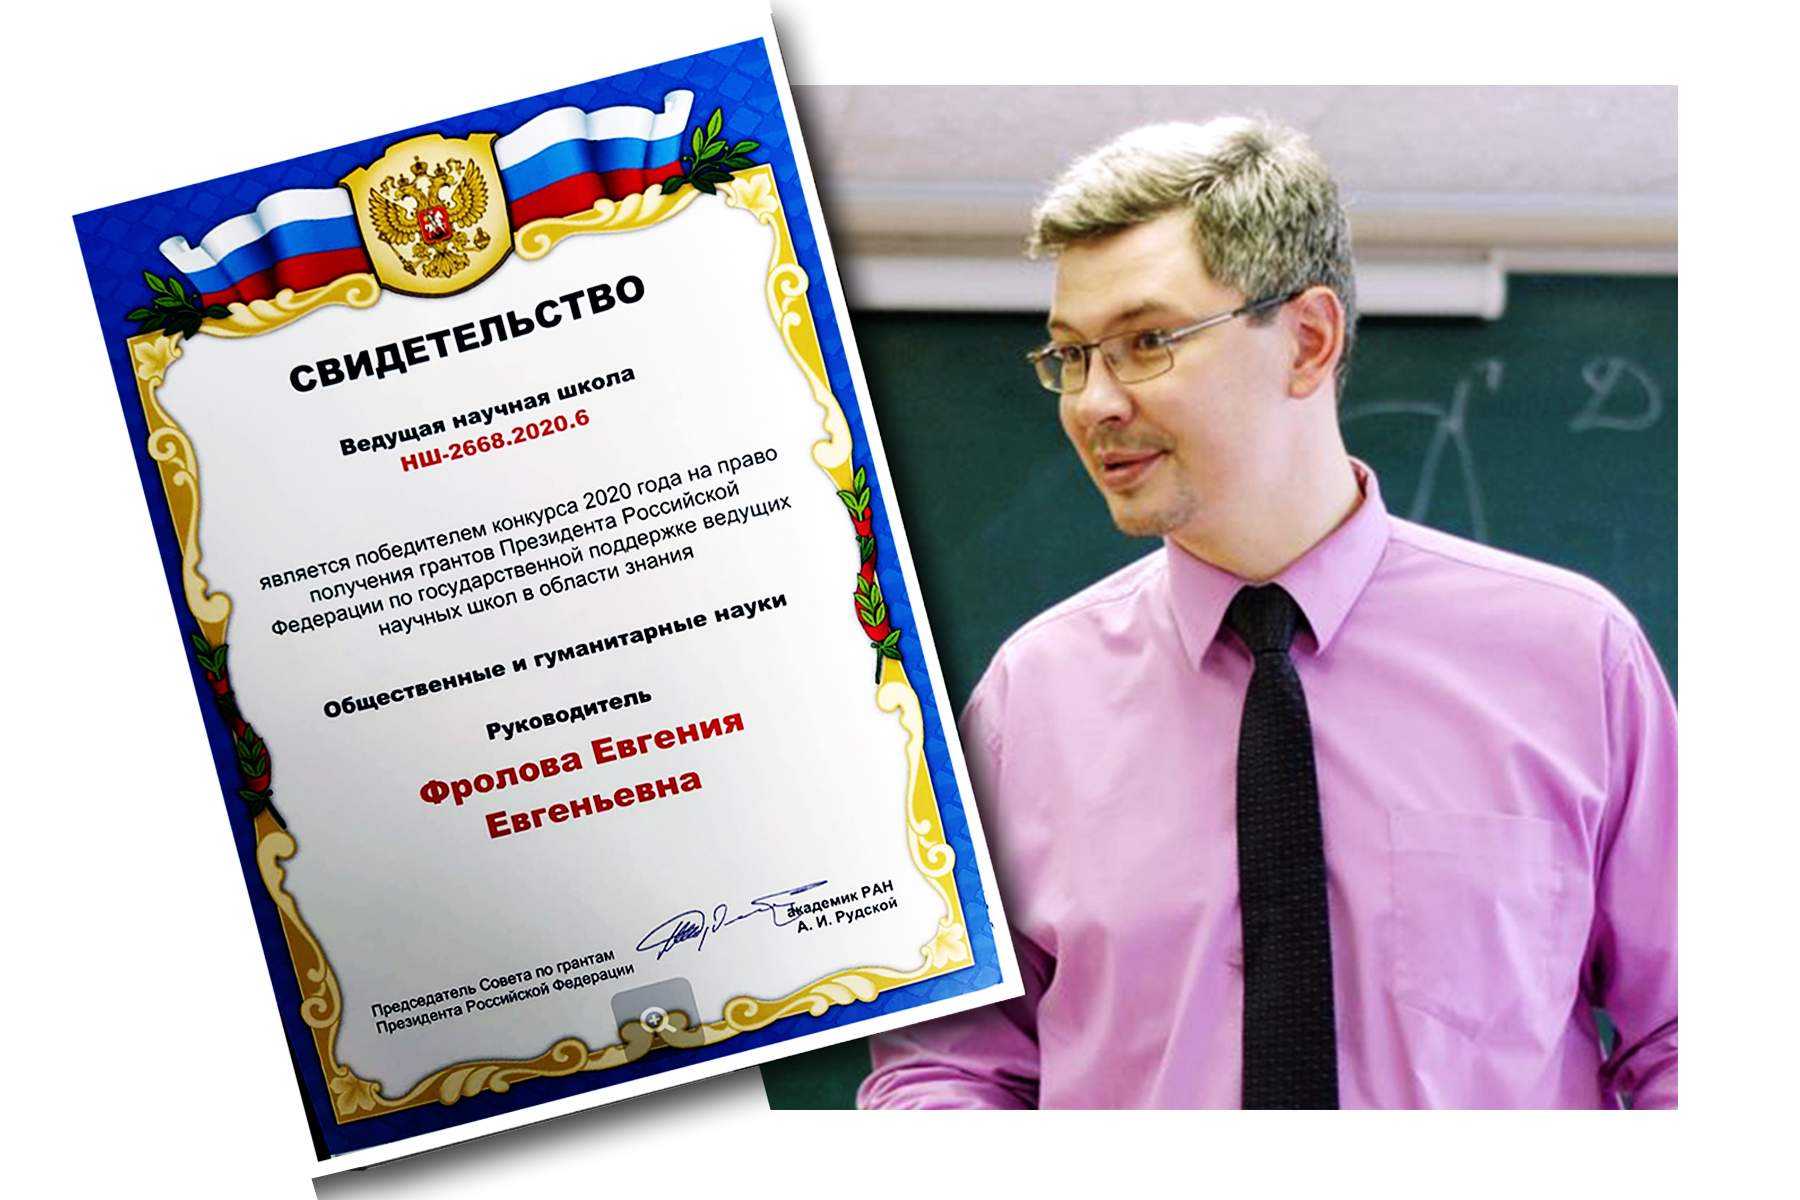 Научная школа ВГУЭС, возглавляемая профессором Алексеем Мамычевым, победила в конкурсе 2020 года на получение грантов Президента РФ